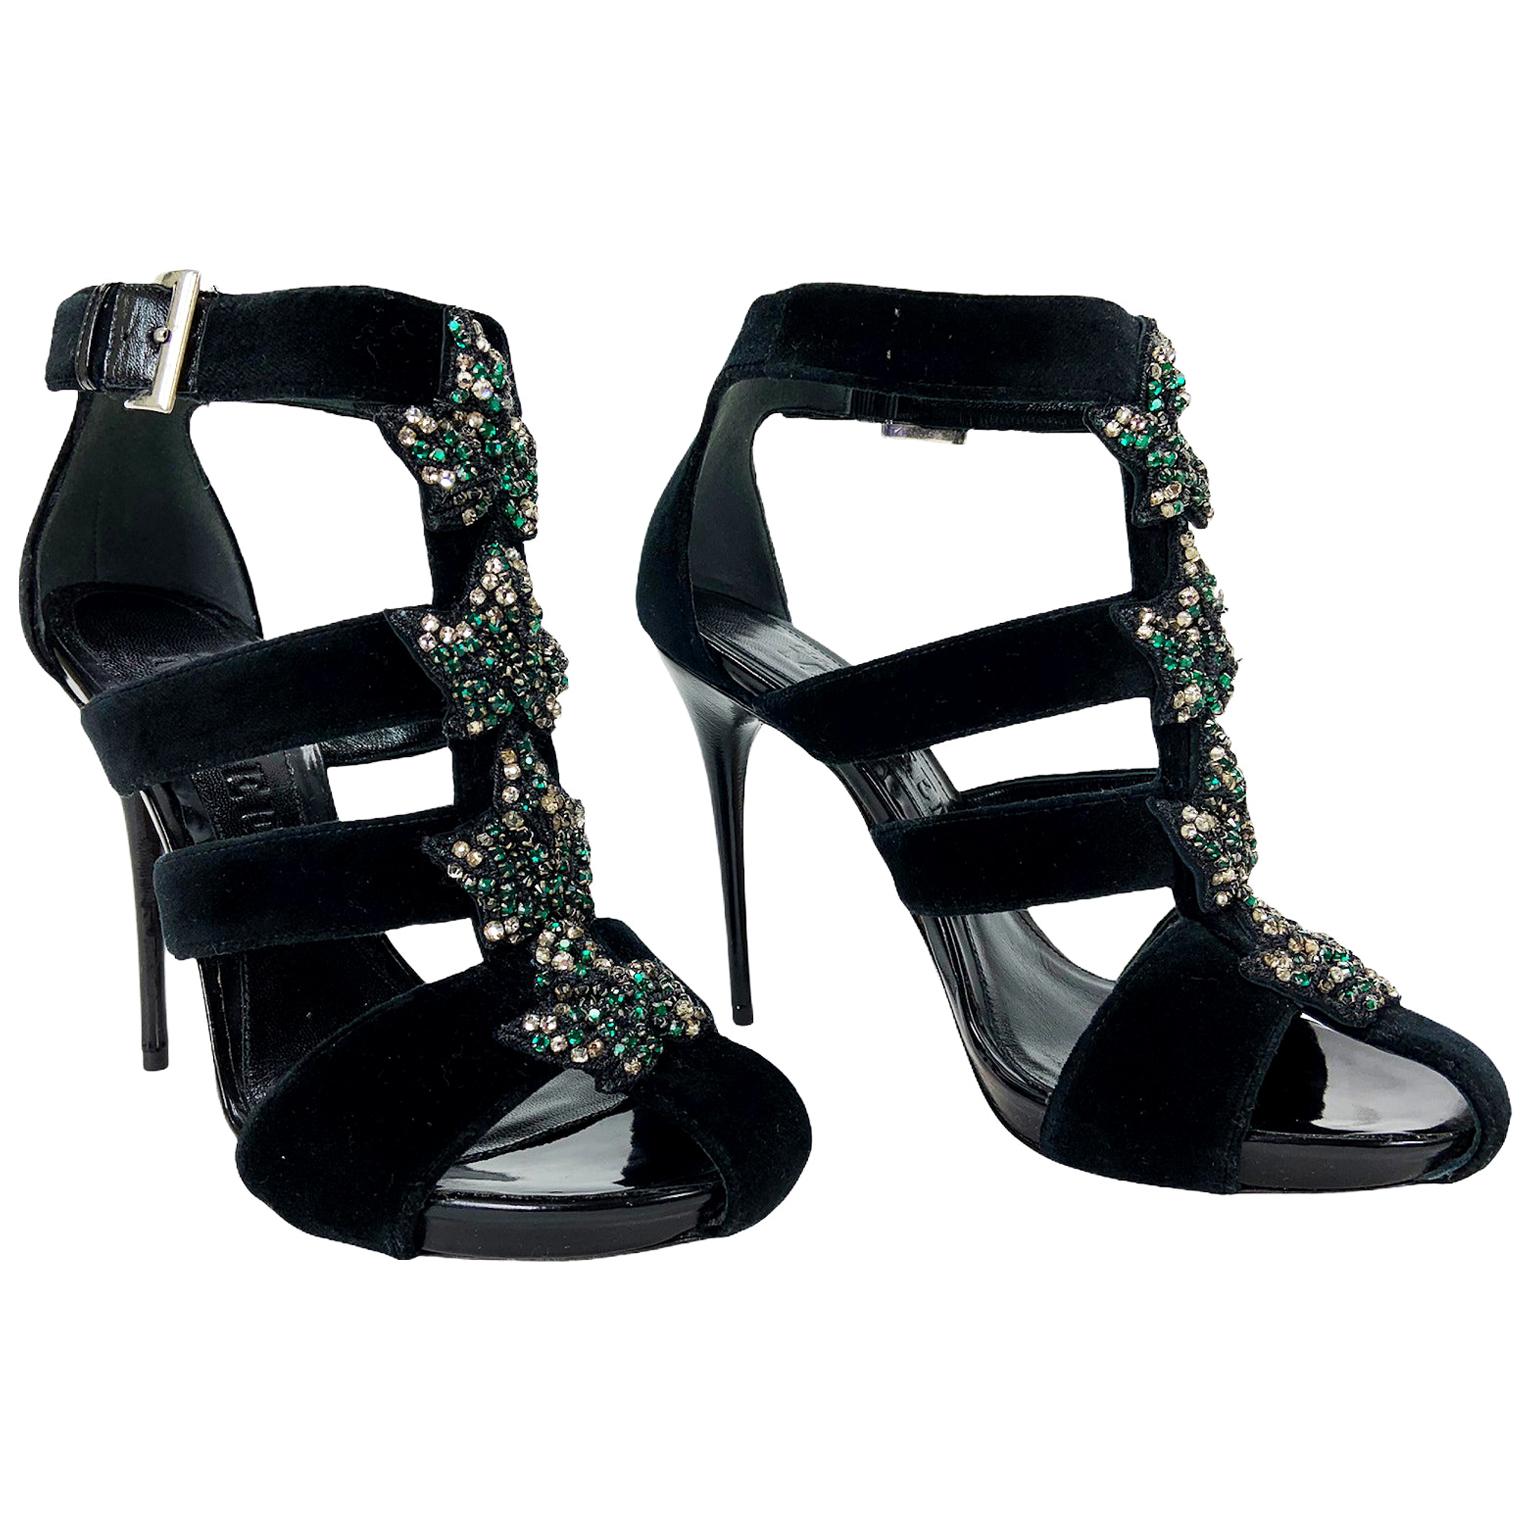 New Alexander McQueen Black Velvet Crystal Embellished Ivy Cage Sandals 37.5 